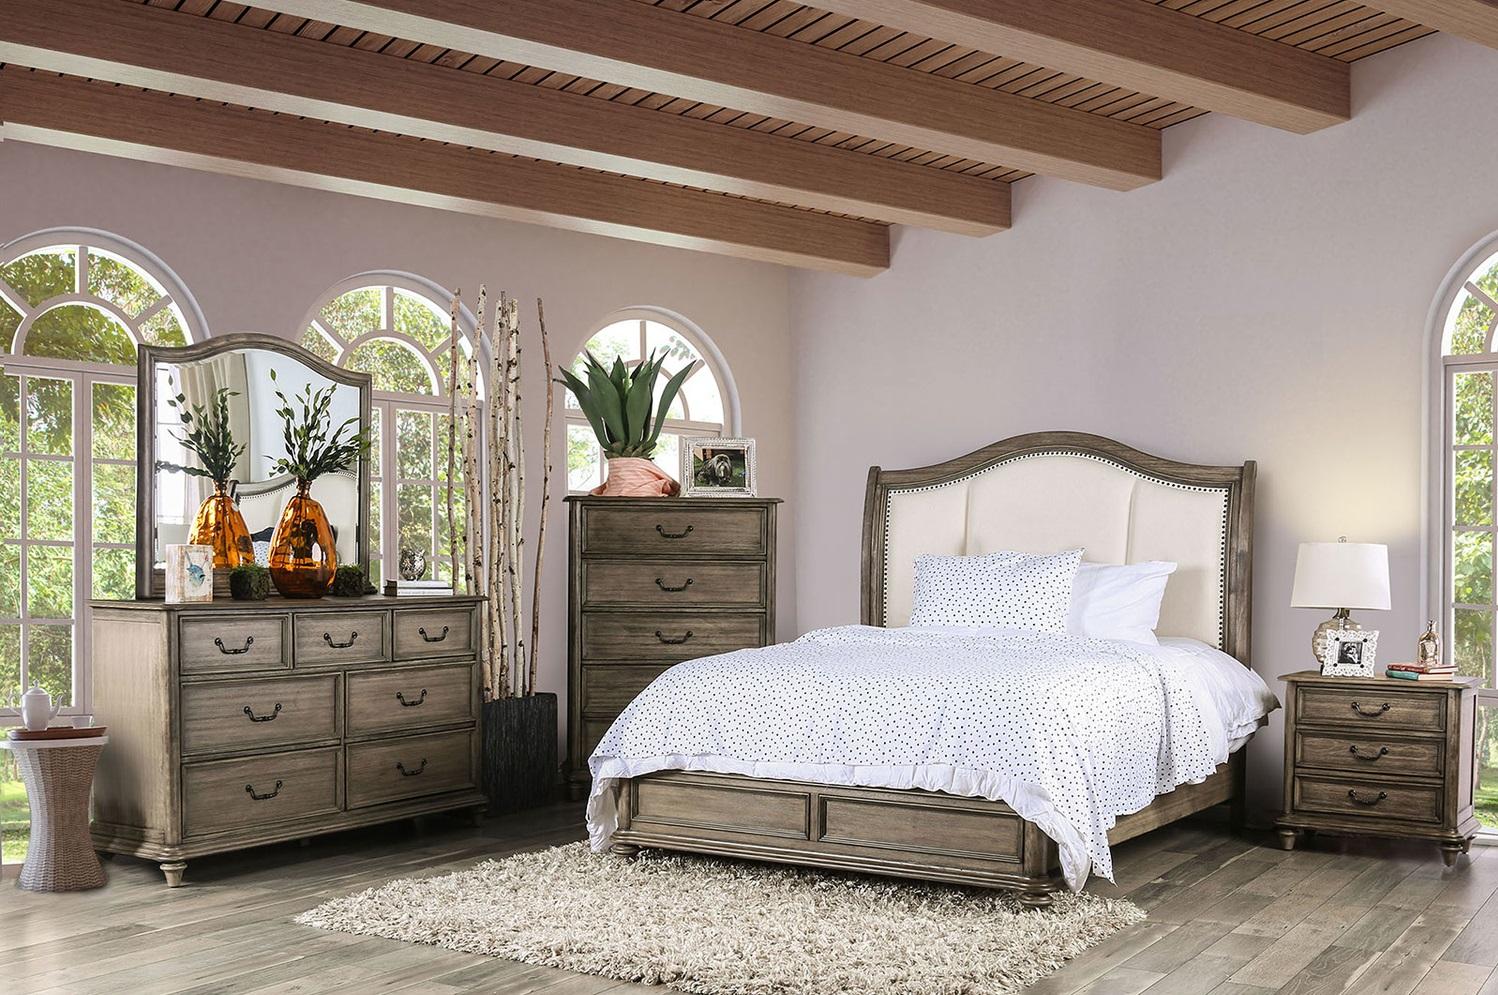 

    
Rustic Natural & Ivory Solid Wood Queen Bedroom Set 5pcs Furniture of America CM7612-Q Belgrade
